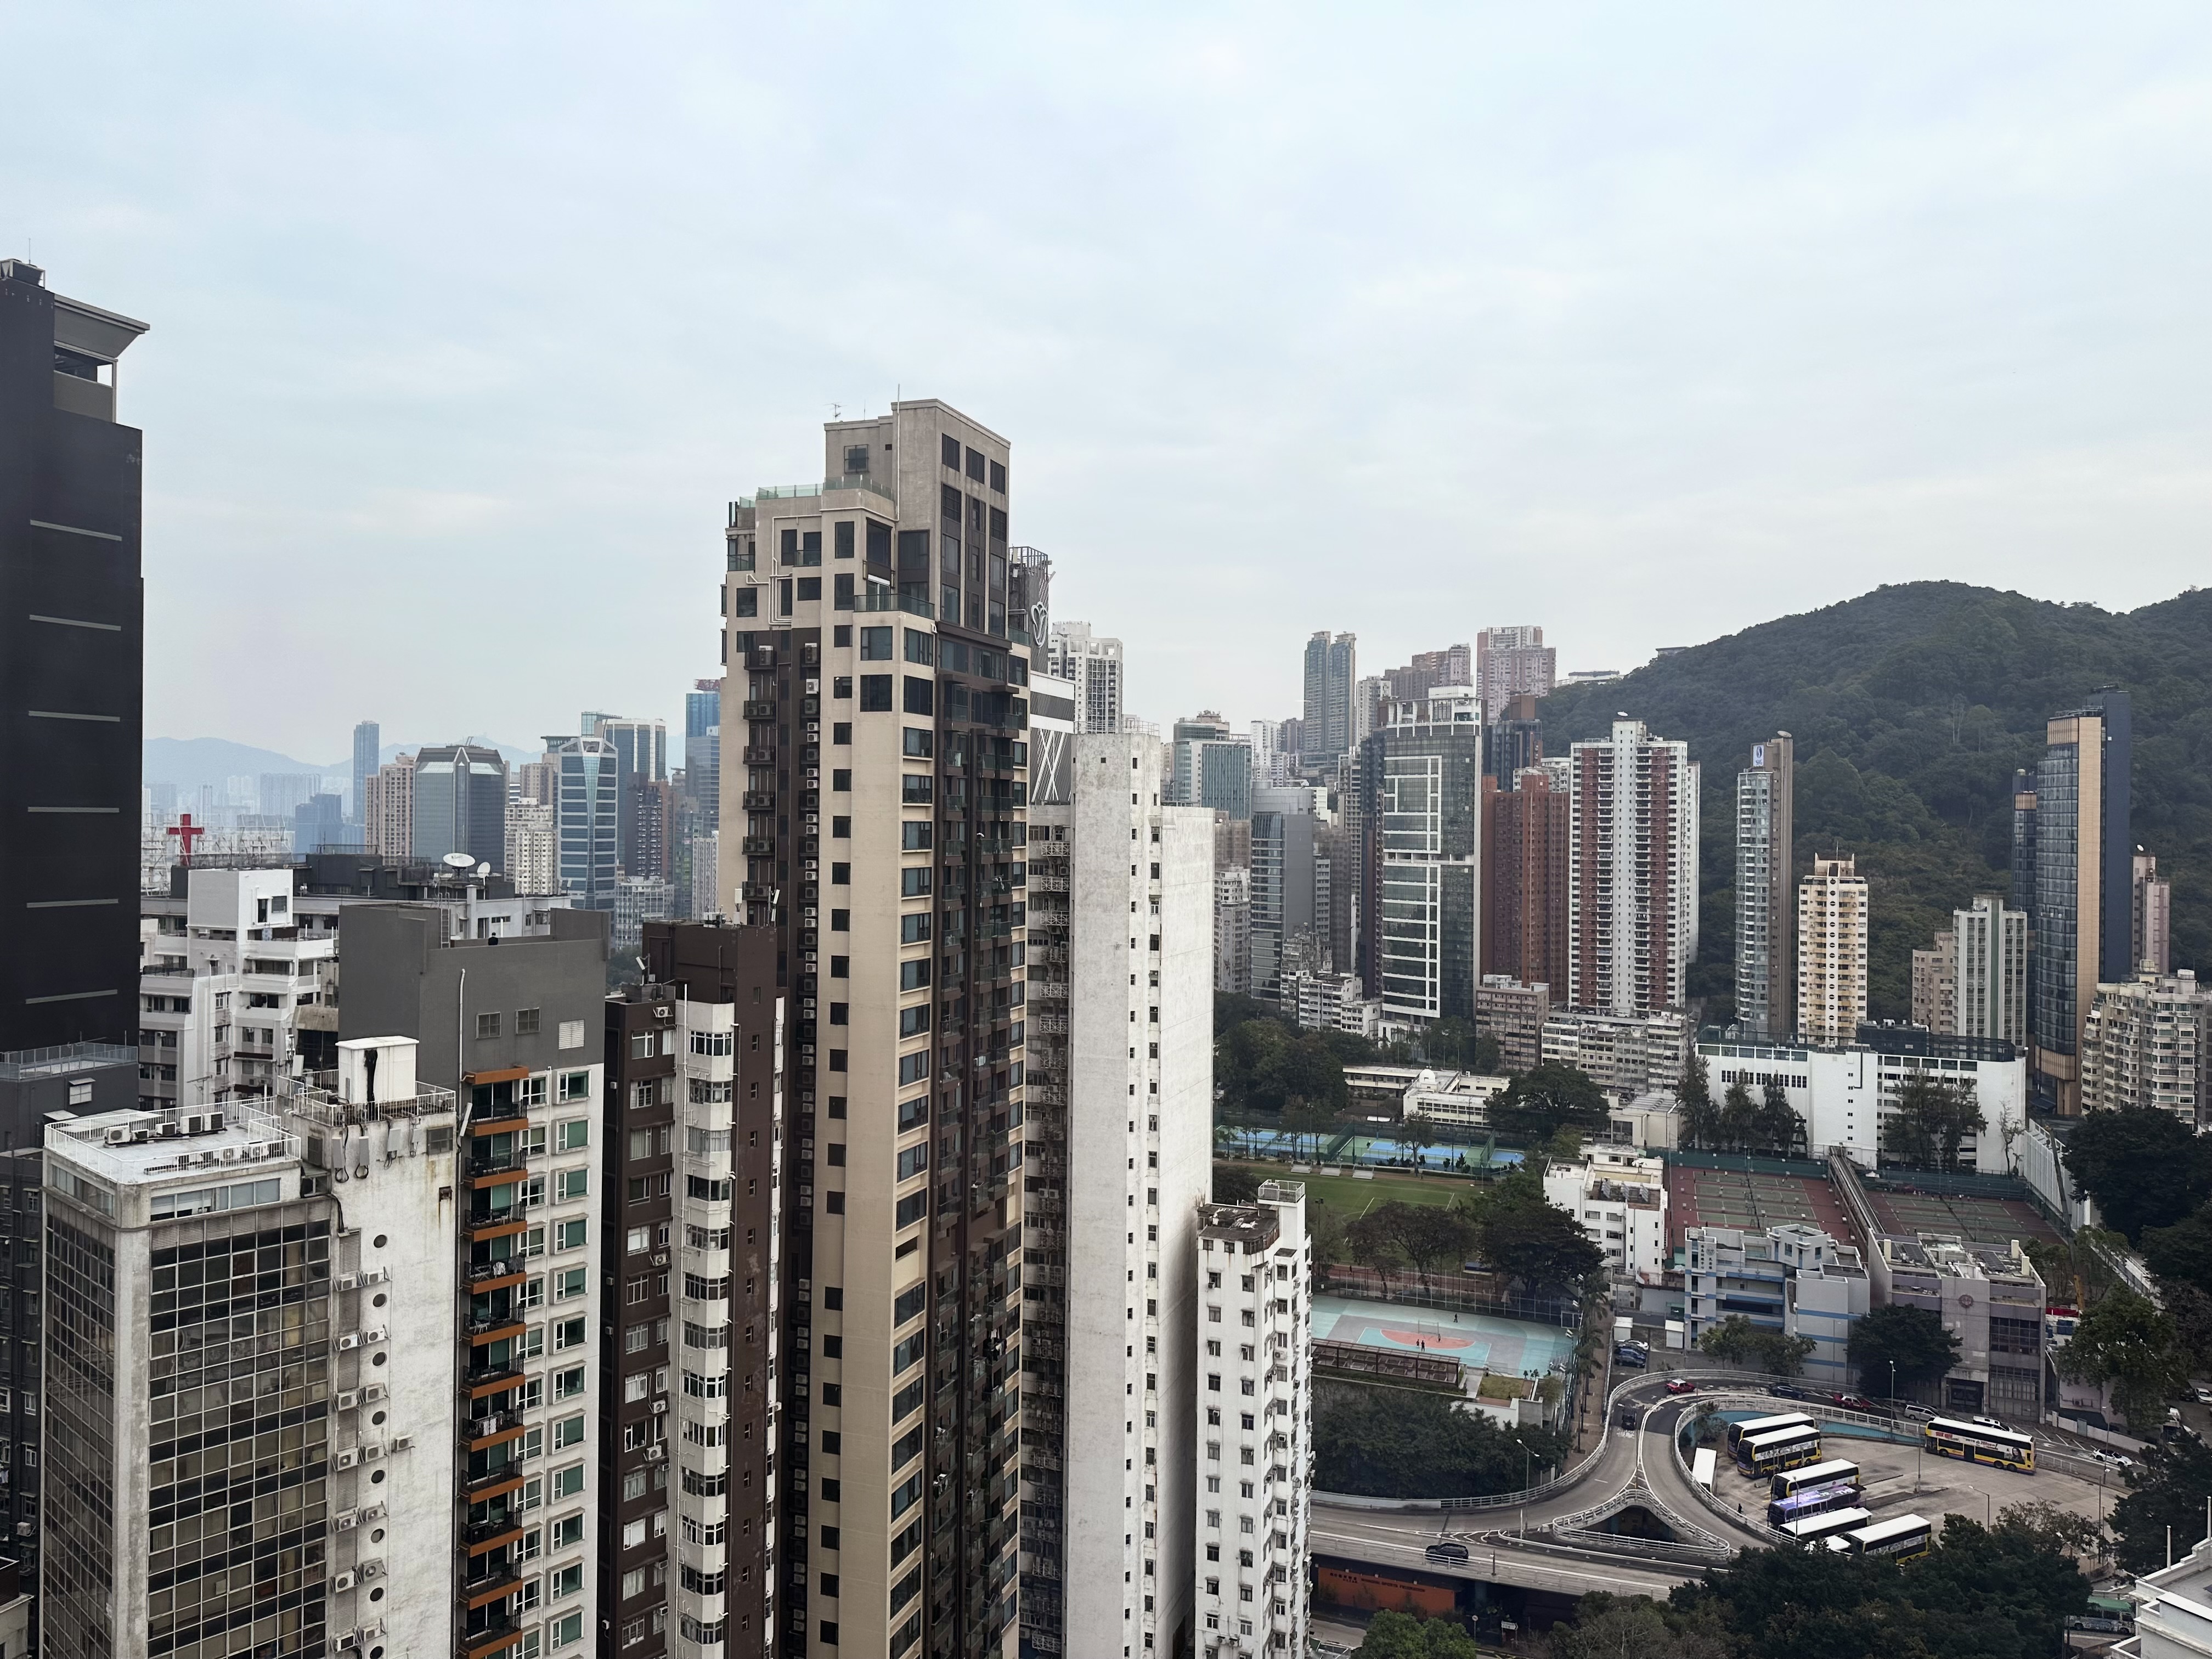 A view across Hong Kong toward Tai Hang and Braemar hill behind.